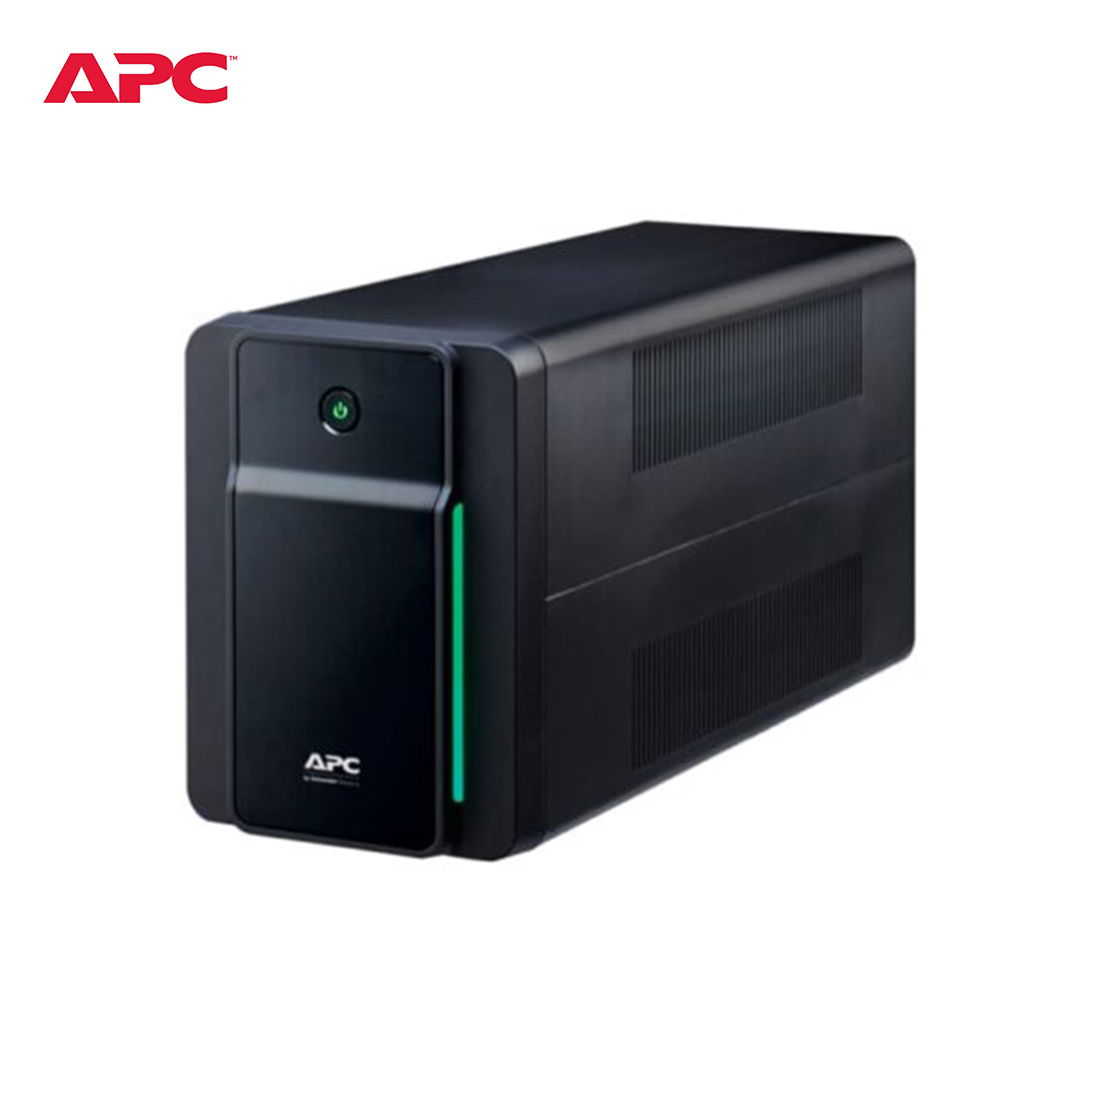 APC-Back-UPS-2200VA-1200W-230V-AVR-Universal-Sockets